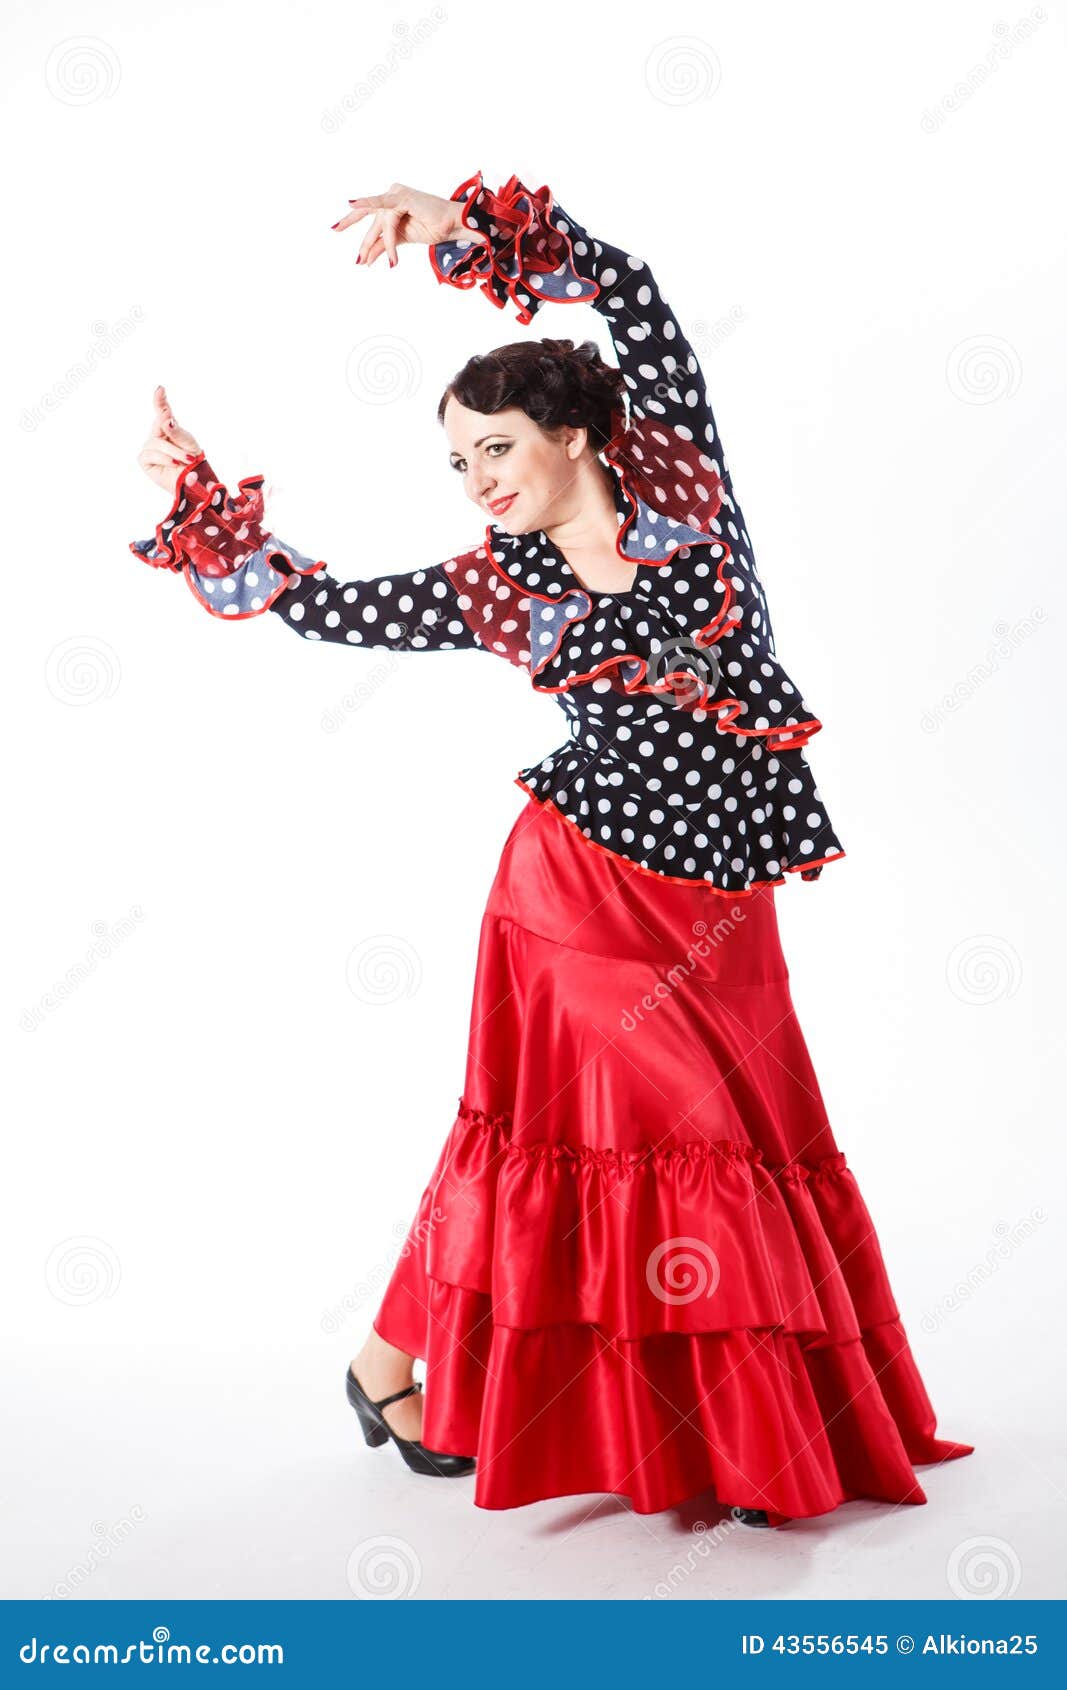 Weiblicher, spanischer Flamencotänzer. Umsäumen weiblicher spanischer Flamencotänzer des jungen schönen Brunette im schwarzen Hemd und roter Flamenco die Aufstellung mit rotem Fan in ihren Armen im Studio auf grauem Hintergrund